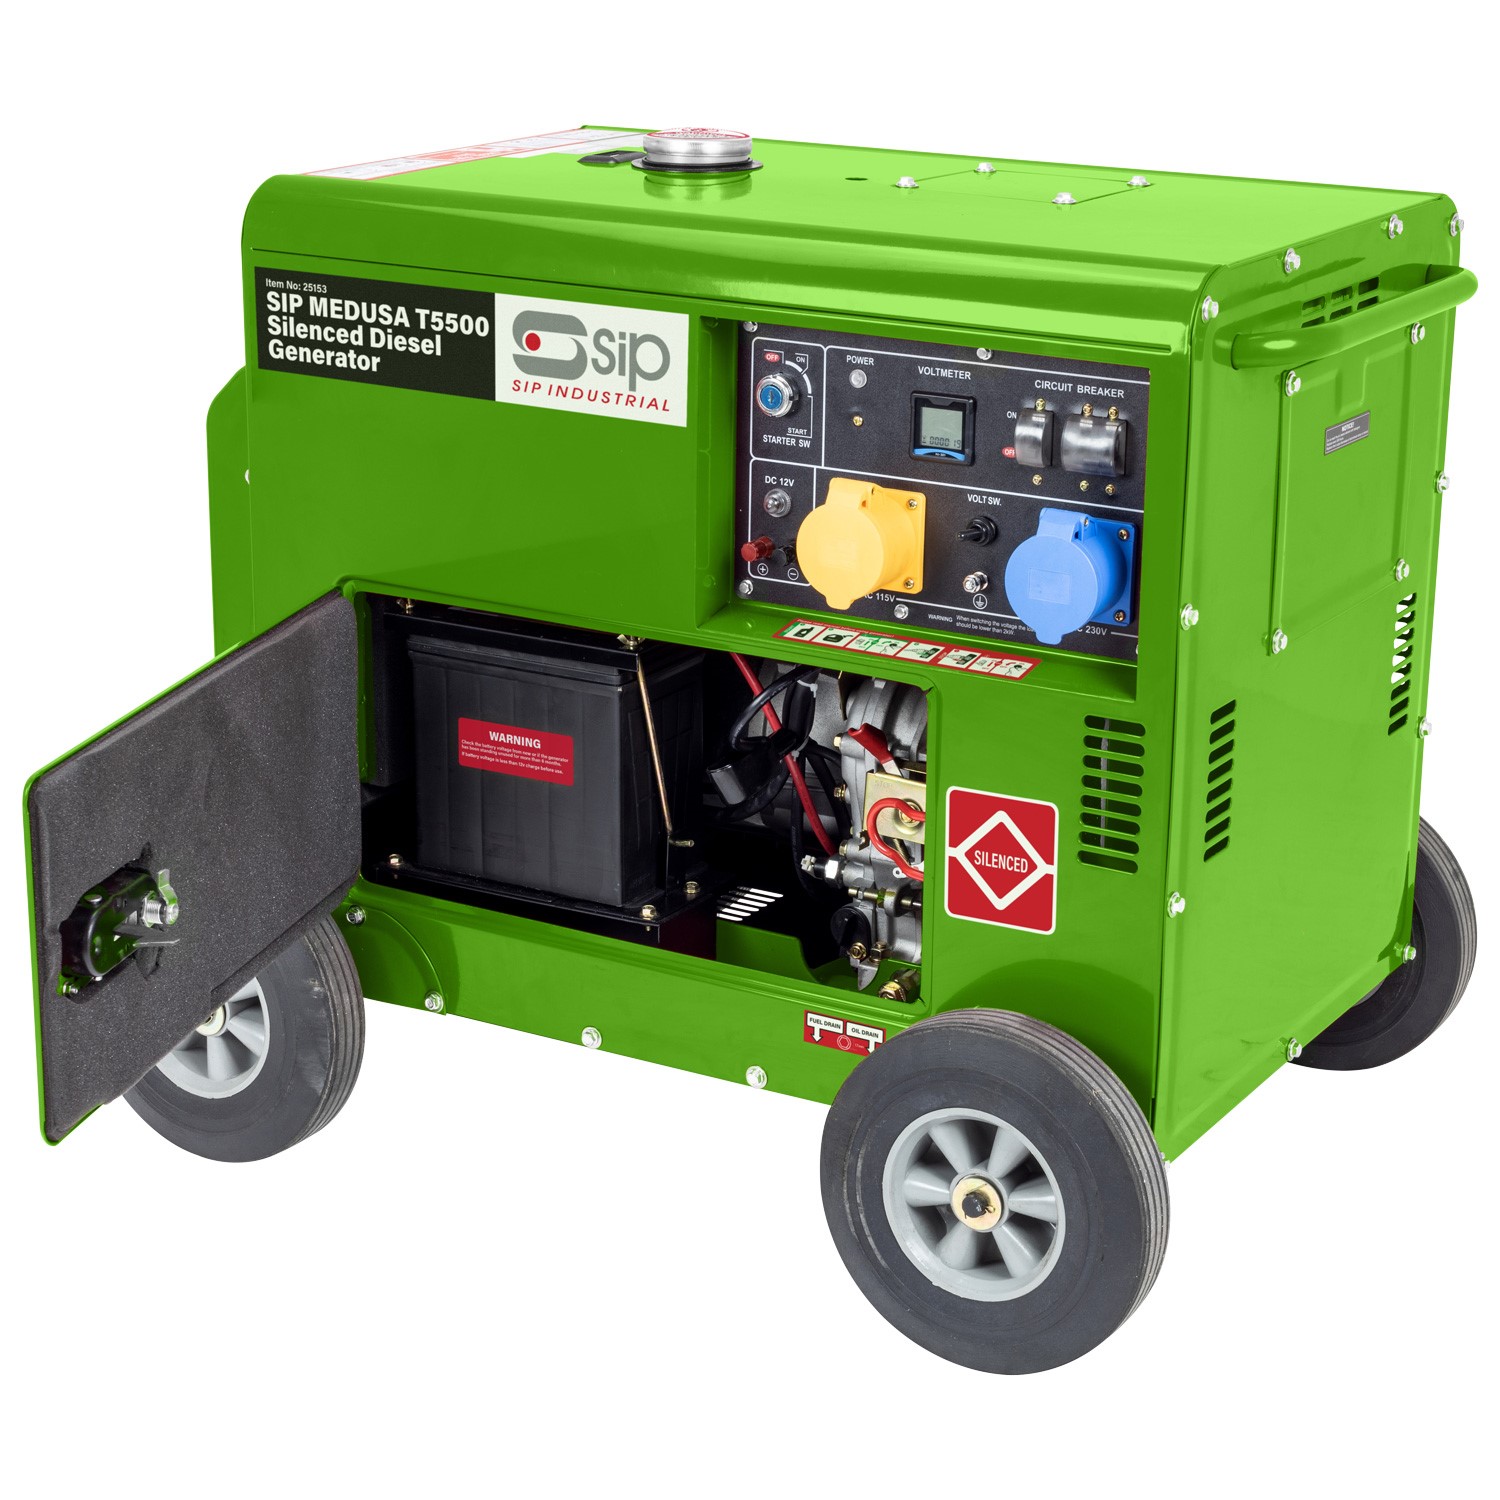 Portable Silenced Diesel Generator 25153